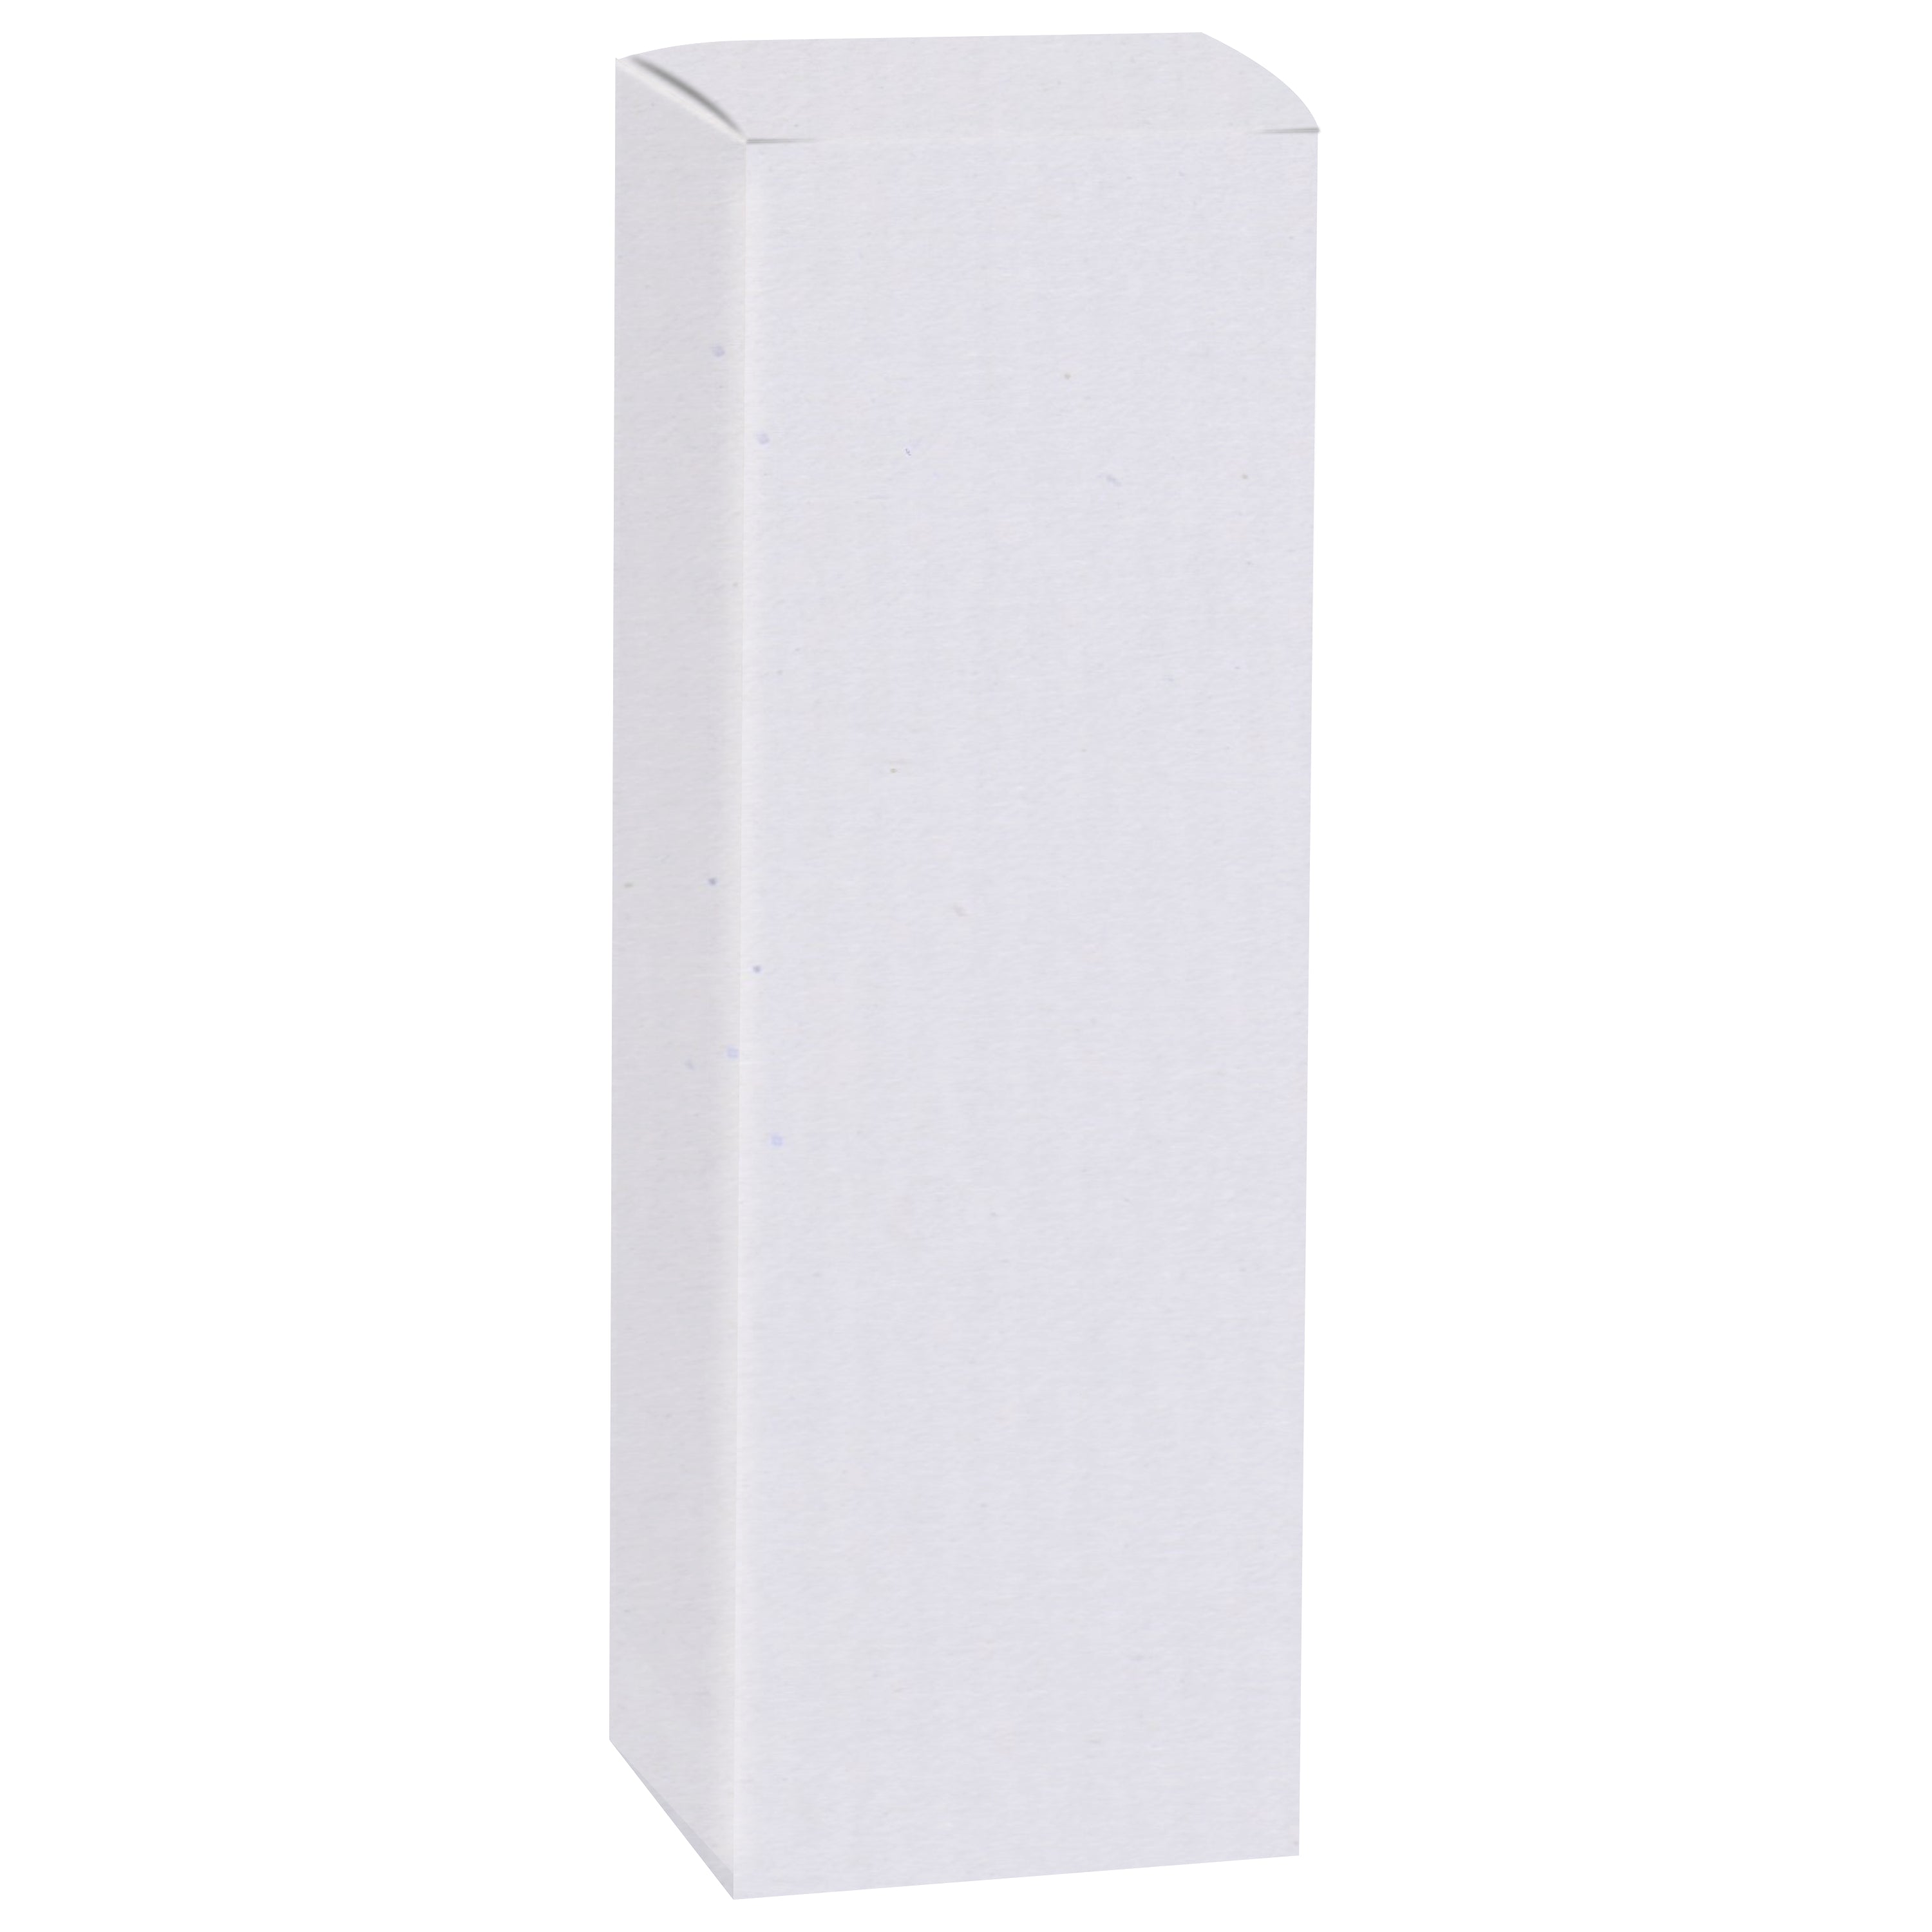 Zenvista Premium White Corrugated Box |15 x 4 x 4 cm | Pack of 50